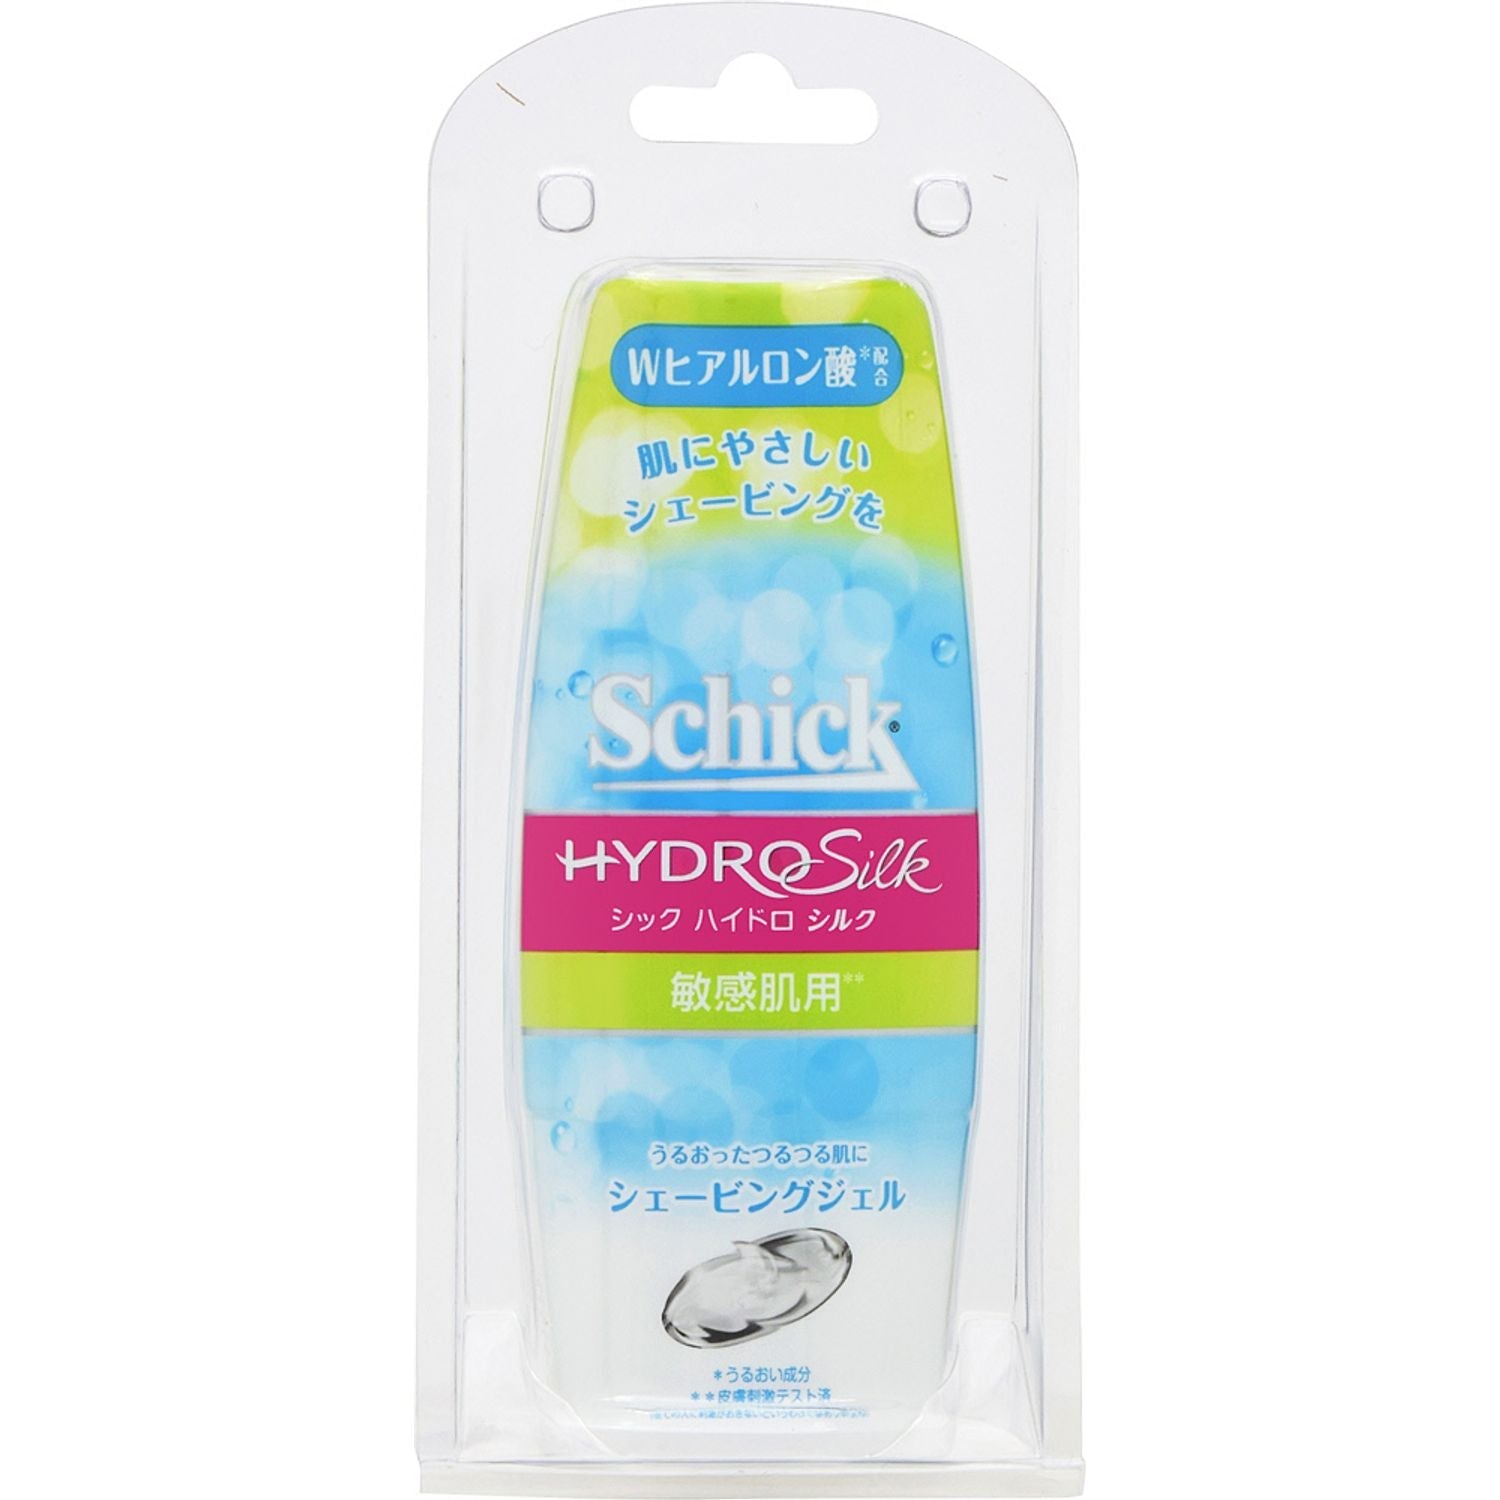 Schick hydro silkシェービングジェル敏感肌用150g